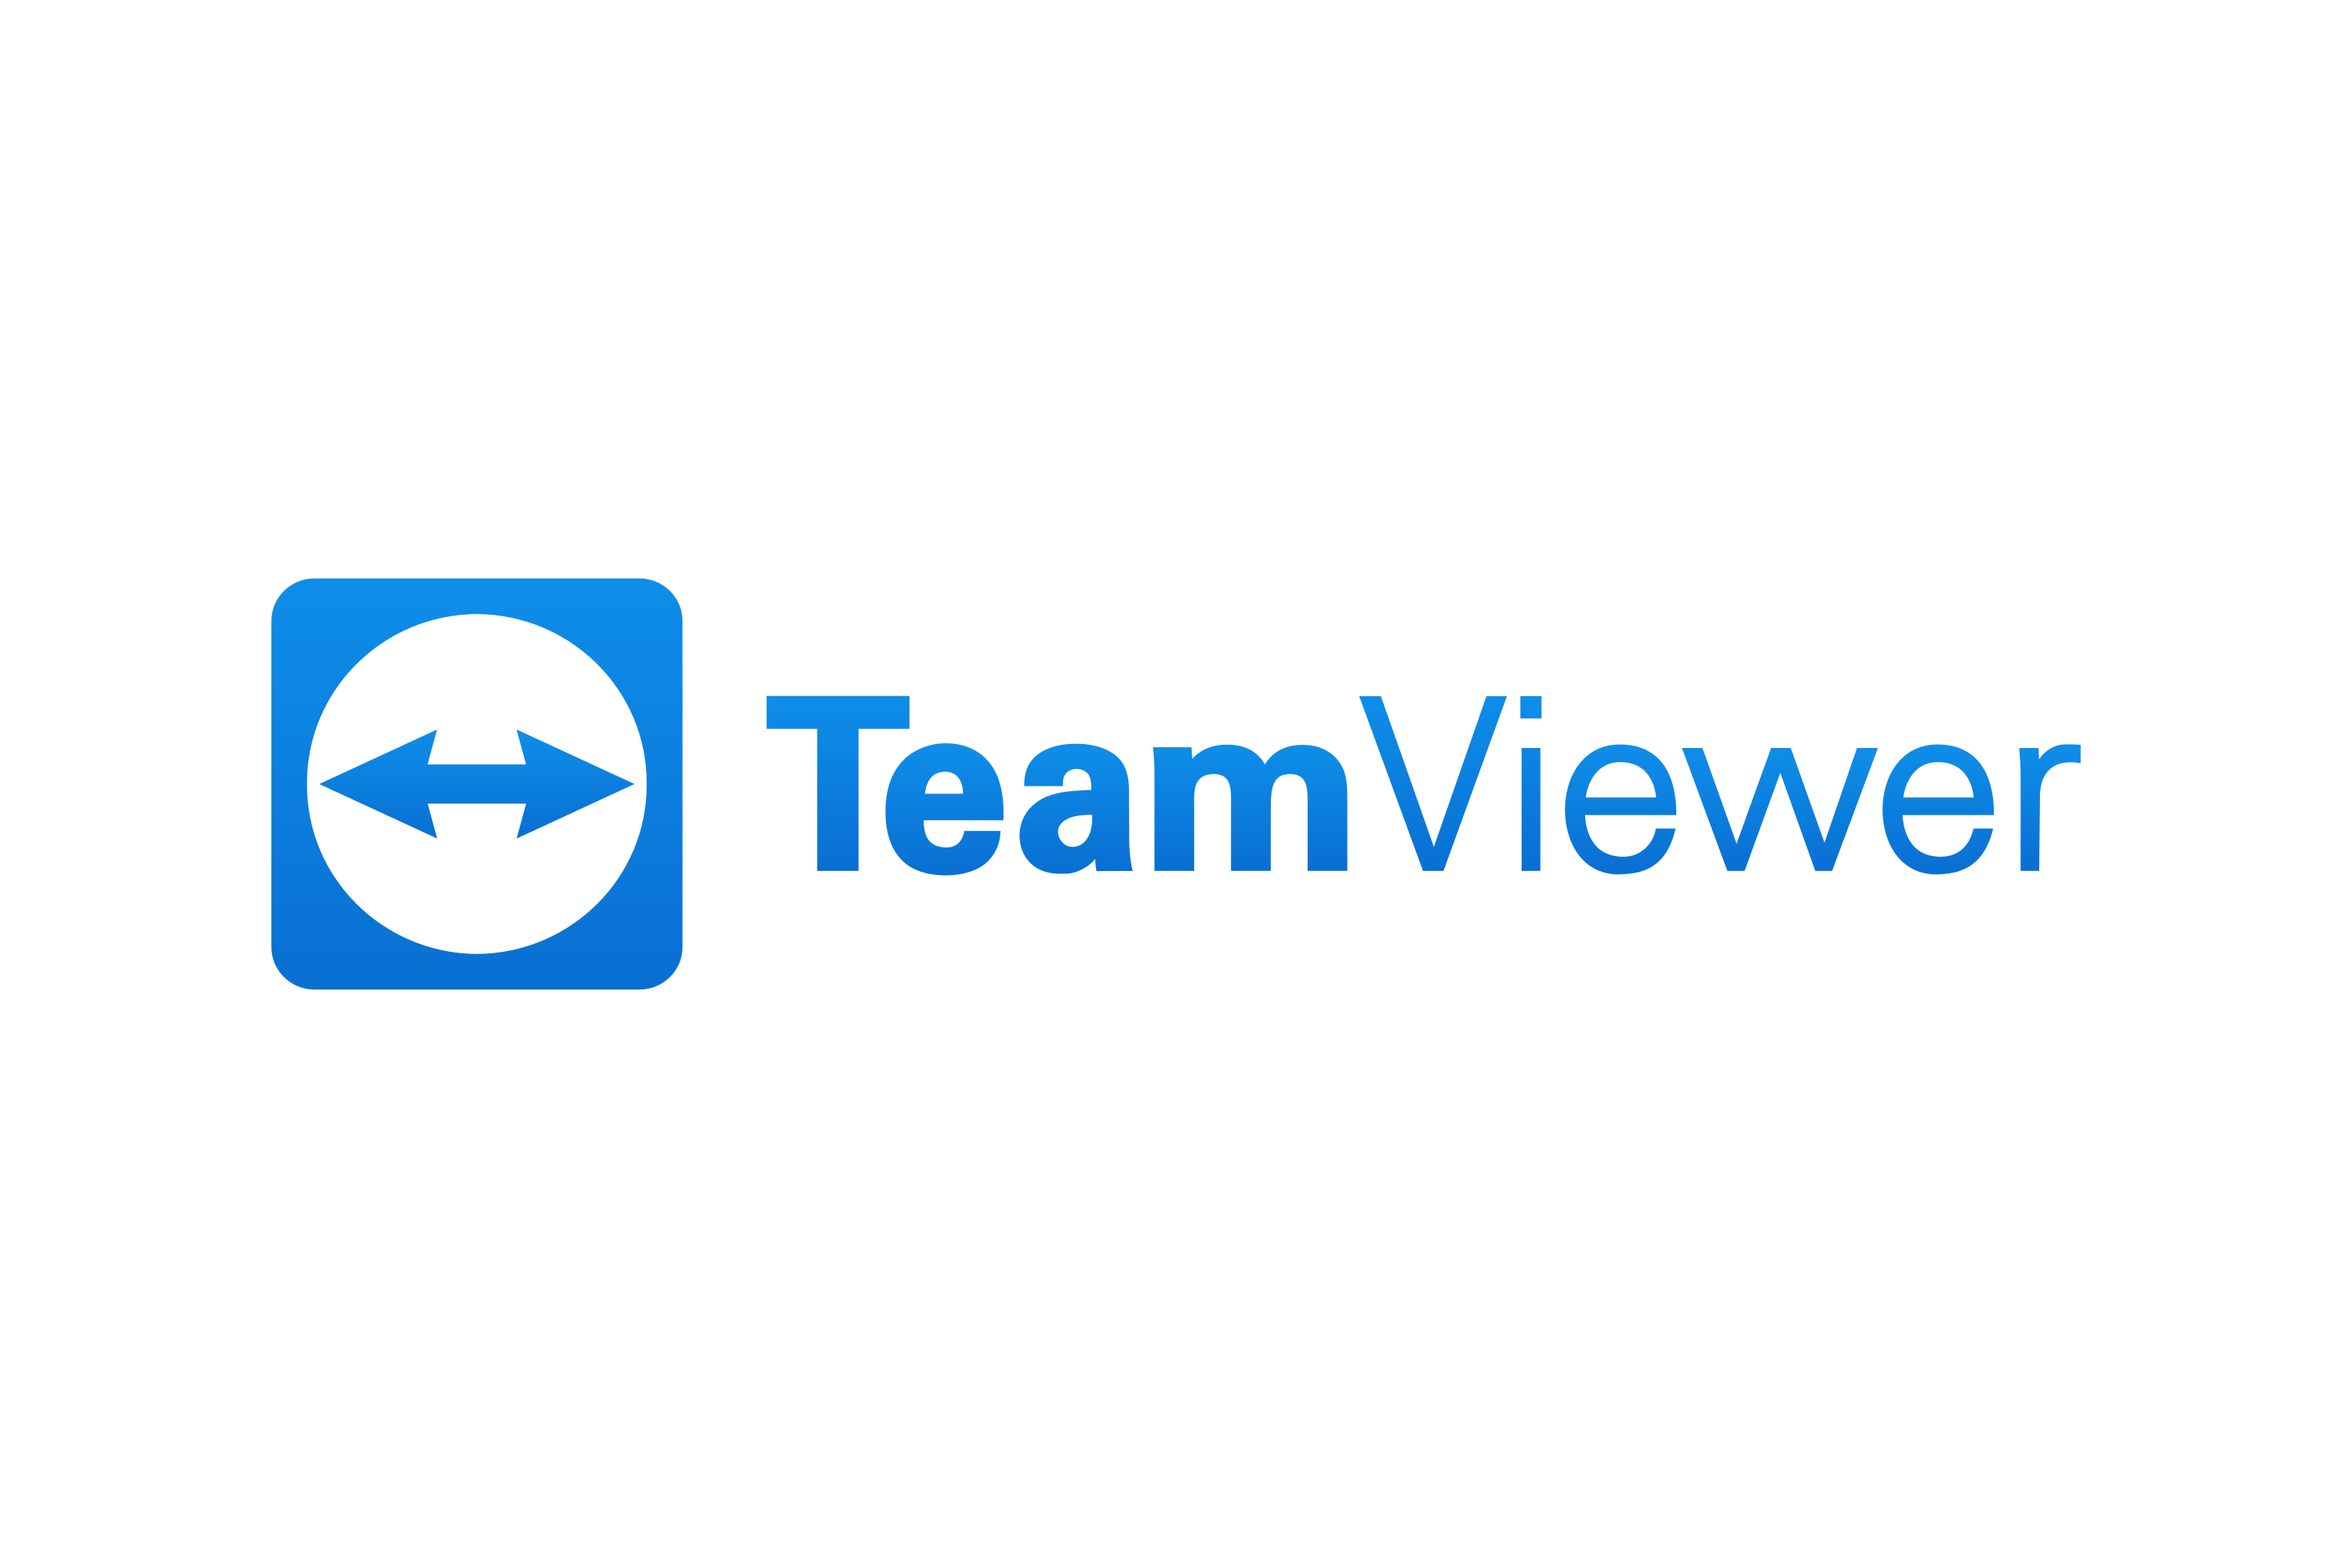 Download Download TeamViewer Logo in SVG Vector or PNG File Format ...